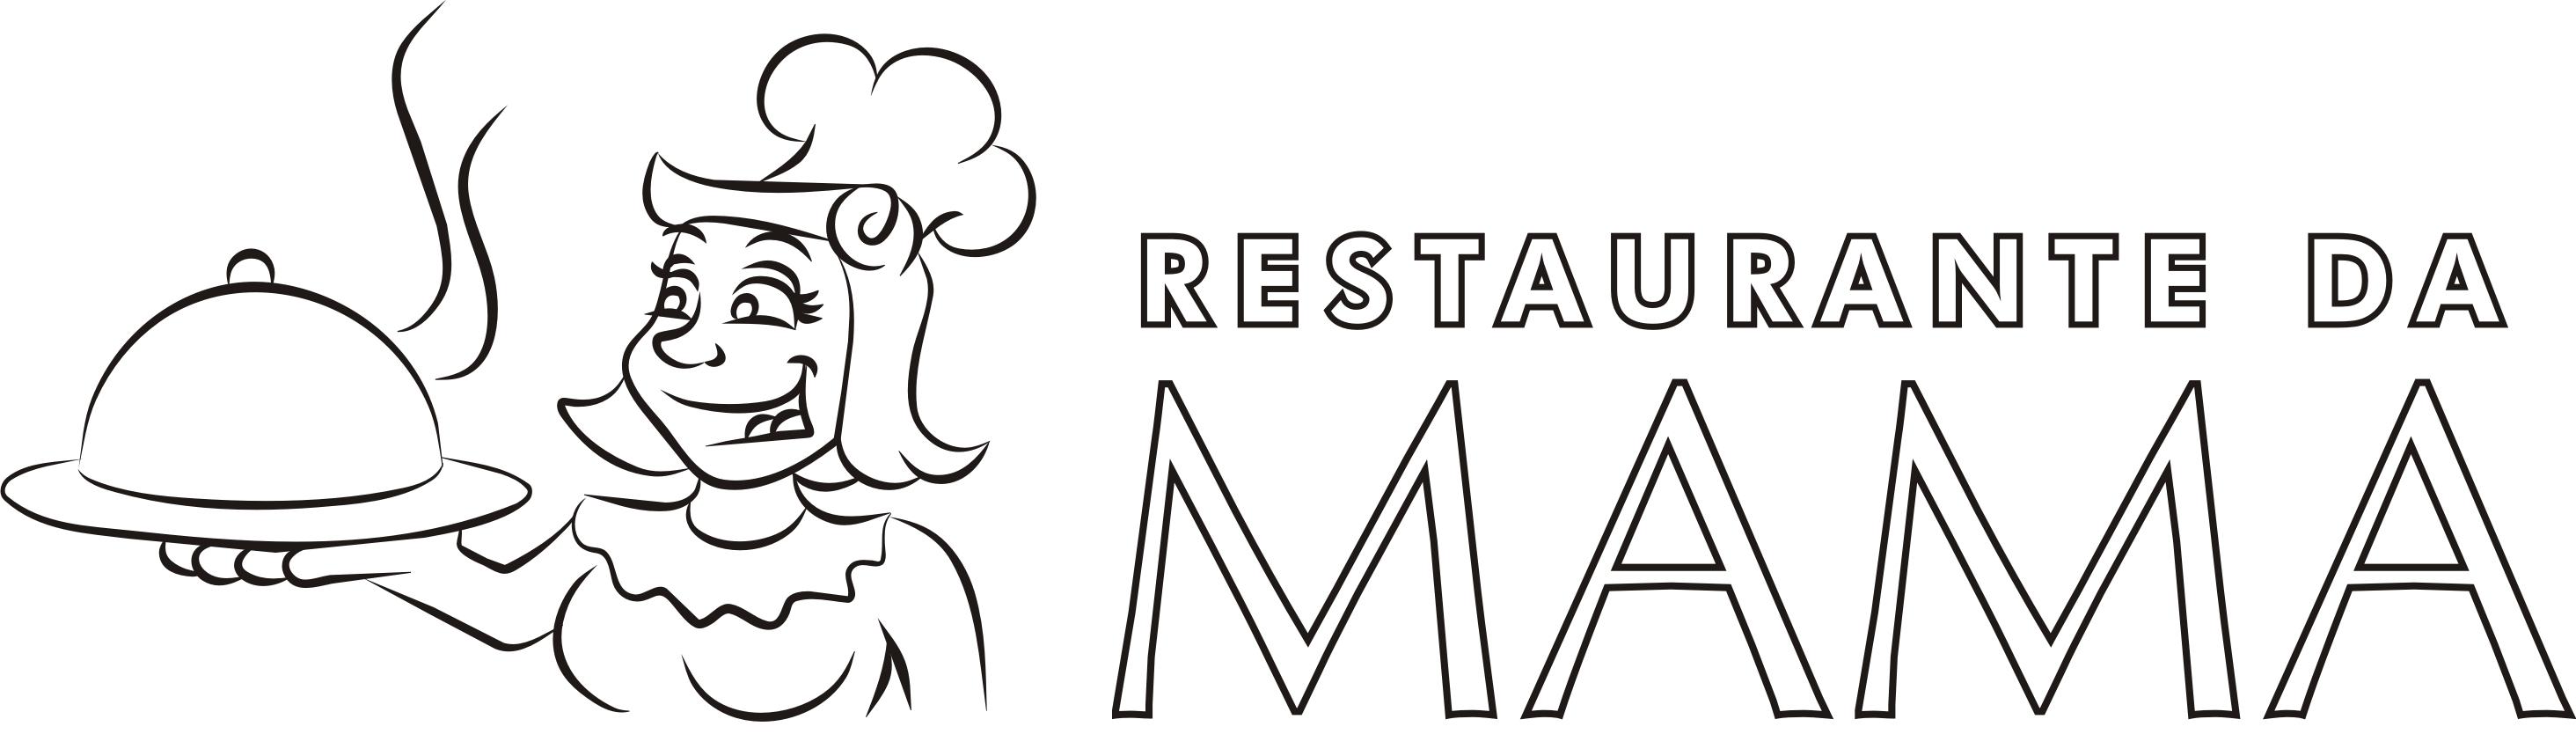 Restaurante da Mama logo